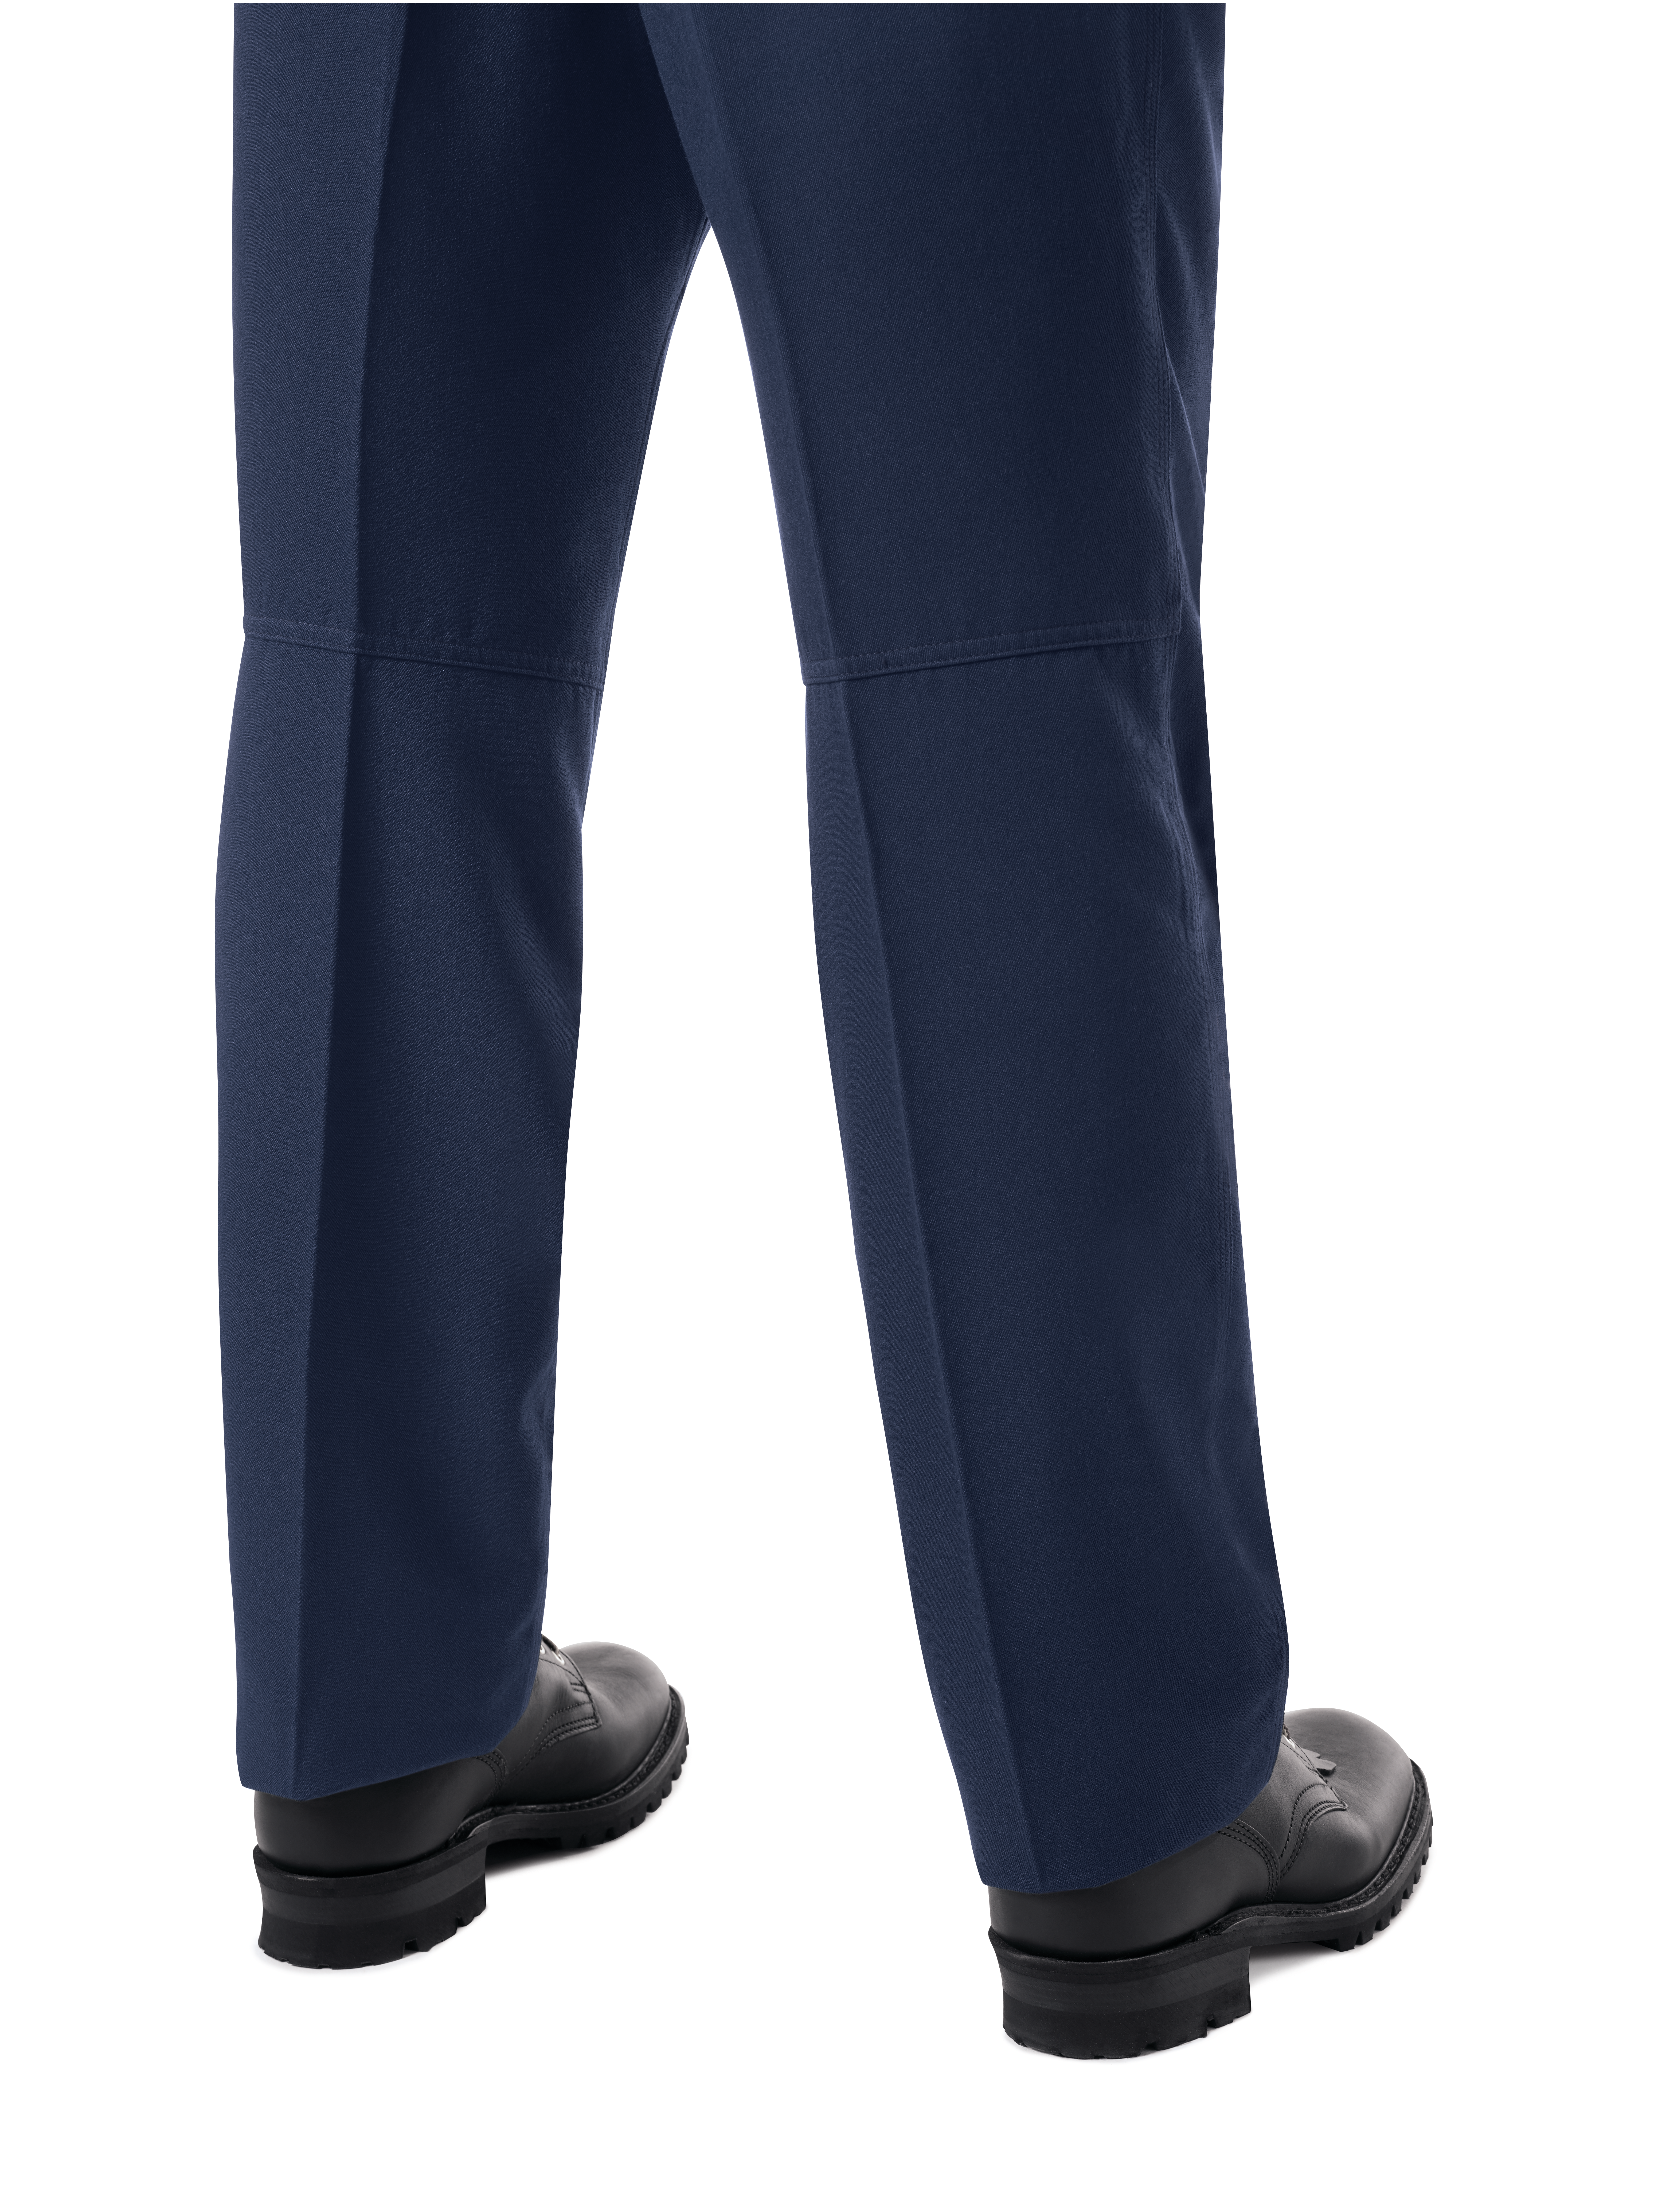 Cotton Unisex Blue School Uniform Pant Size Medium Waist Size 24